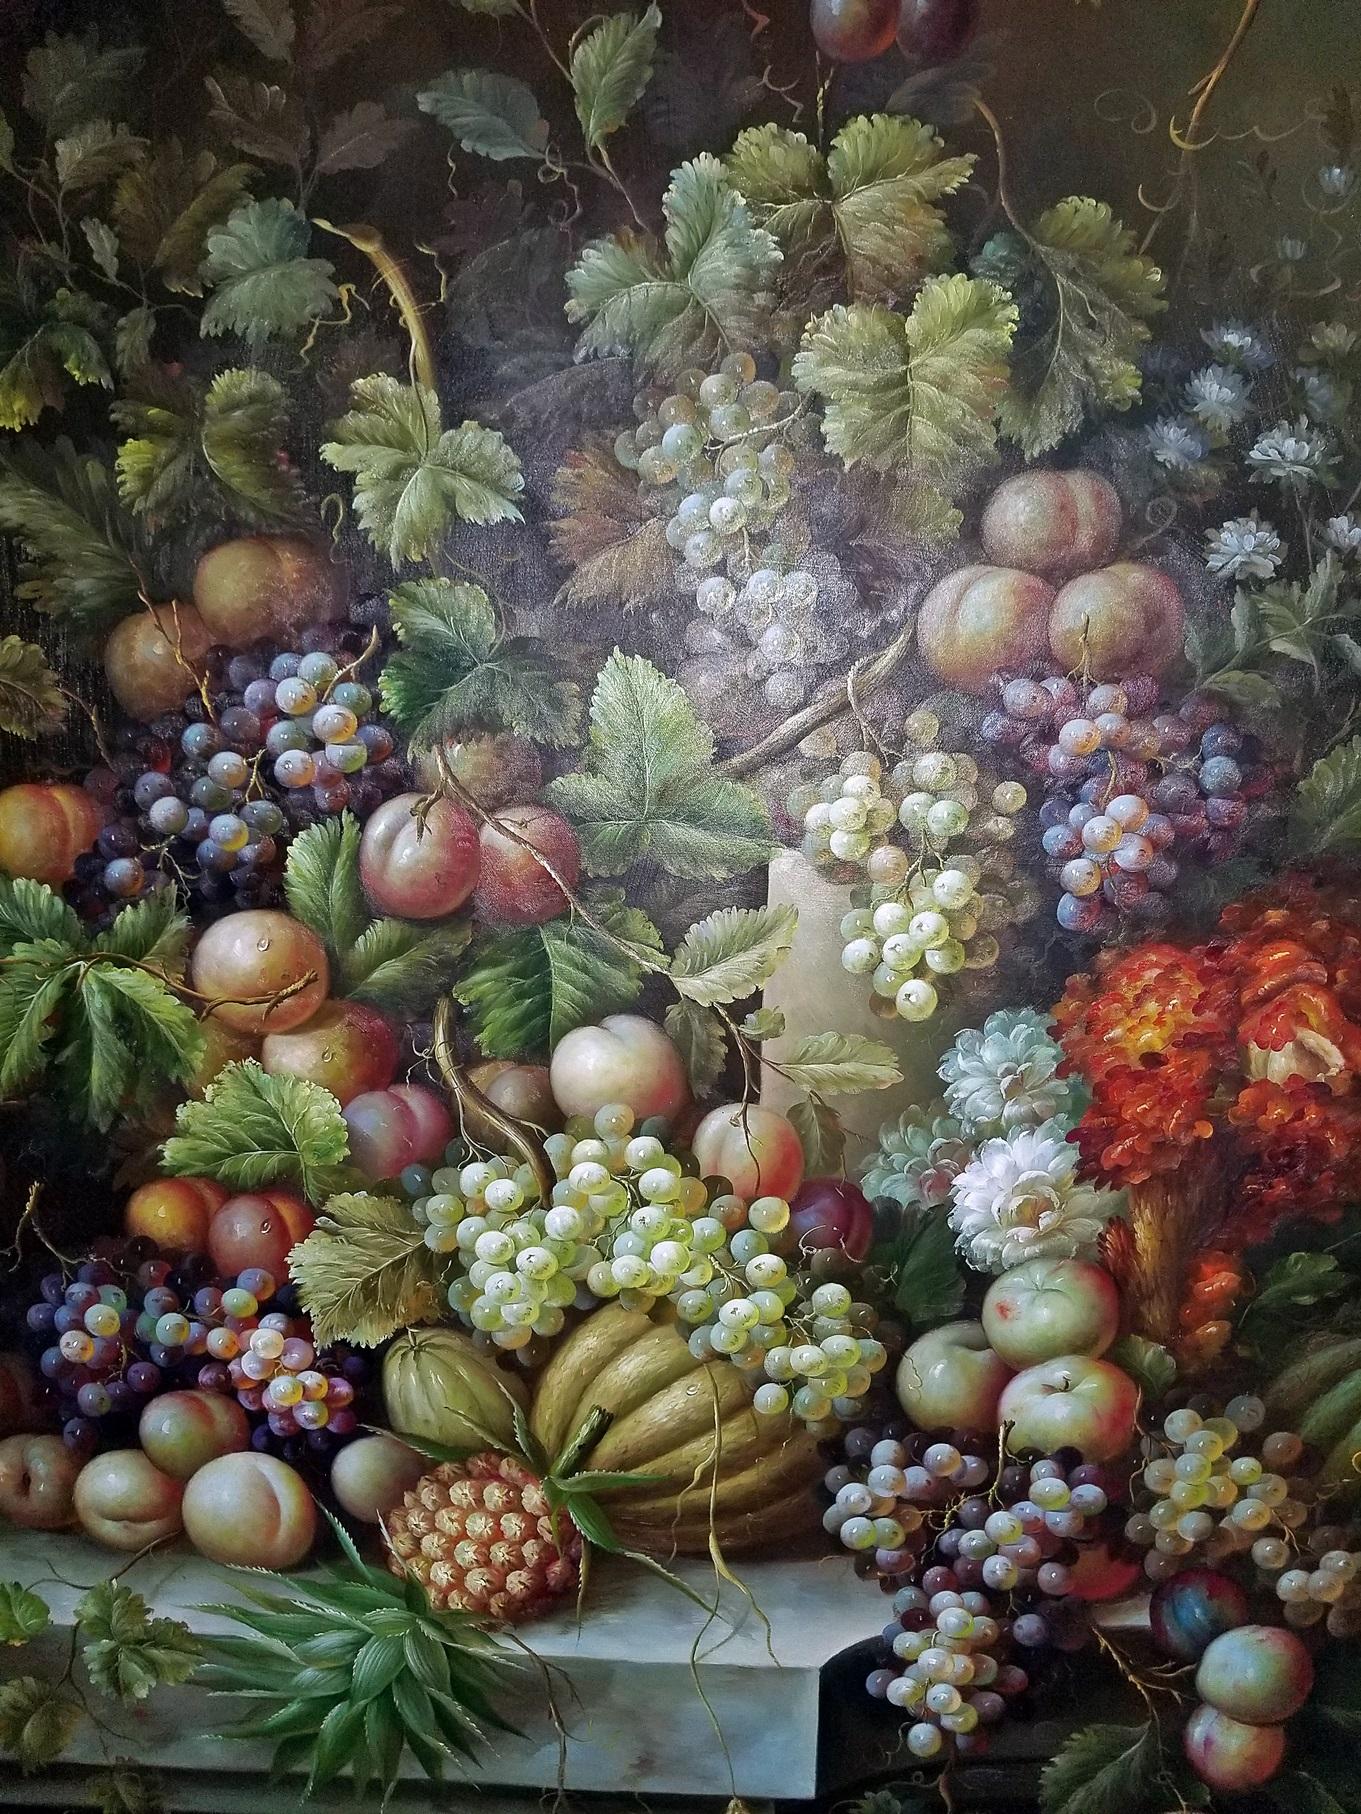 PRESENTE une SUPERBE huile sur toile du 20ème siècle et ORIGINALE MONUMENTALEMENT GRANDE de M. Picot.

Il s'agit d'une très belle peinture de nature morte représentant des fruits dans un style classique.

École continentale. Nous savons qu'il s'agit